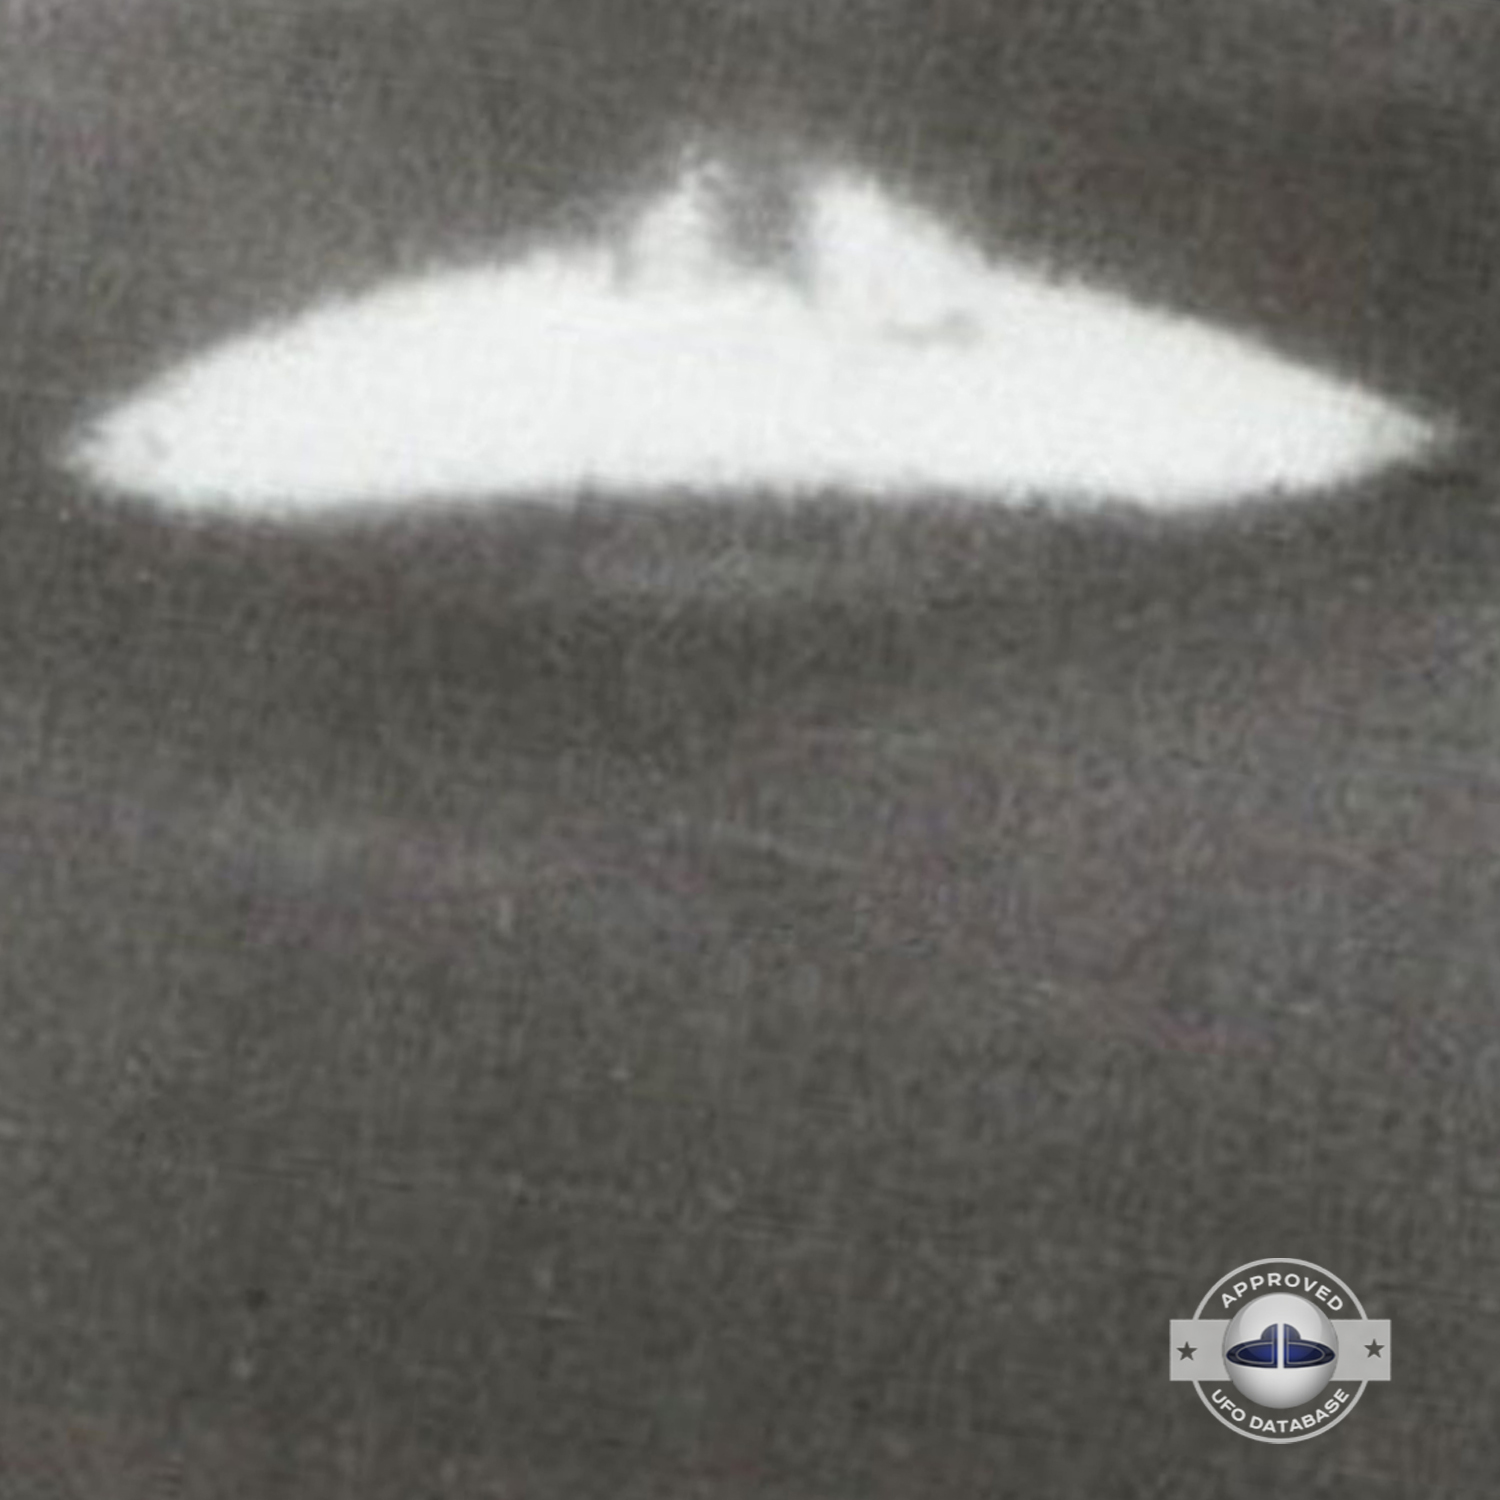 Russia UFO sighting| Dalnegorsk, Primorsky Krai UFO picture | 1989 UFO Picture #141-4